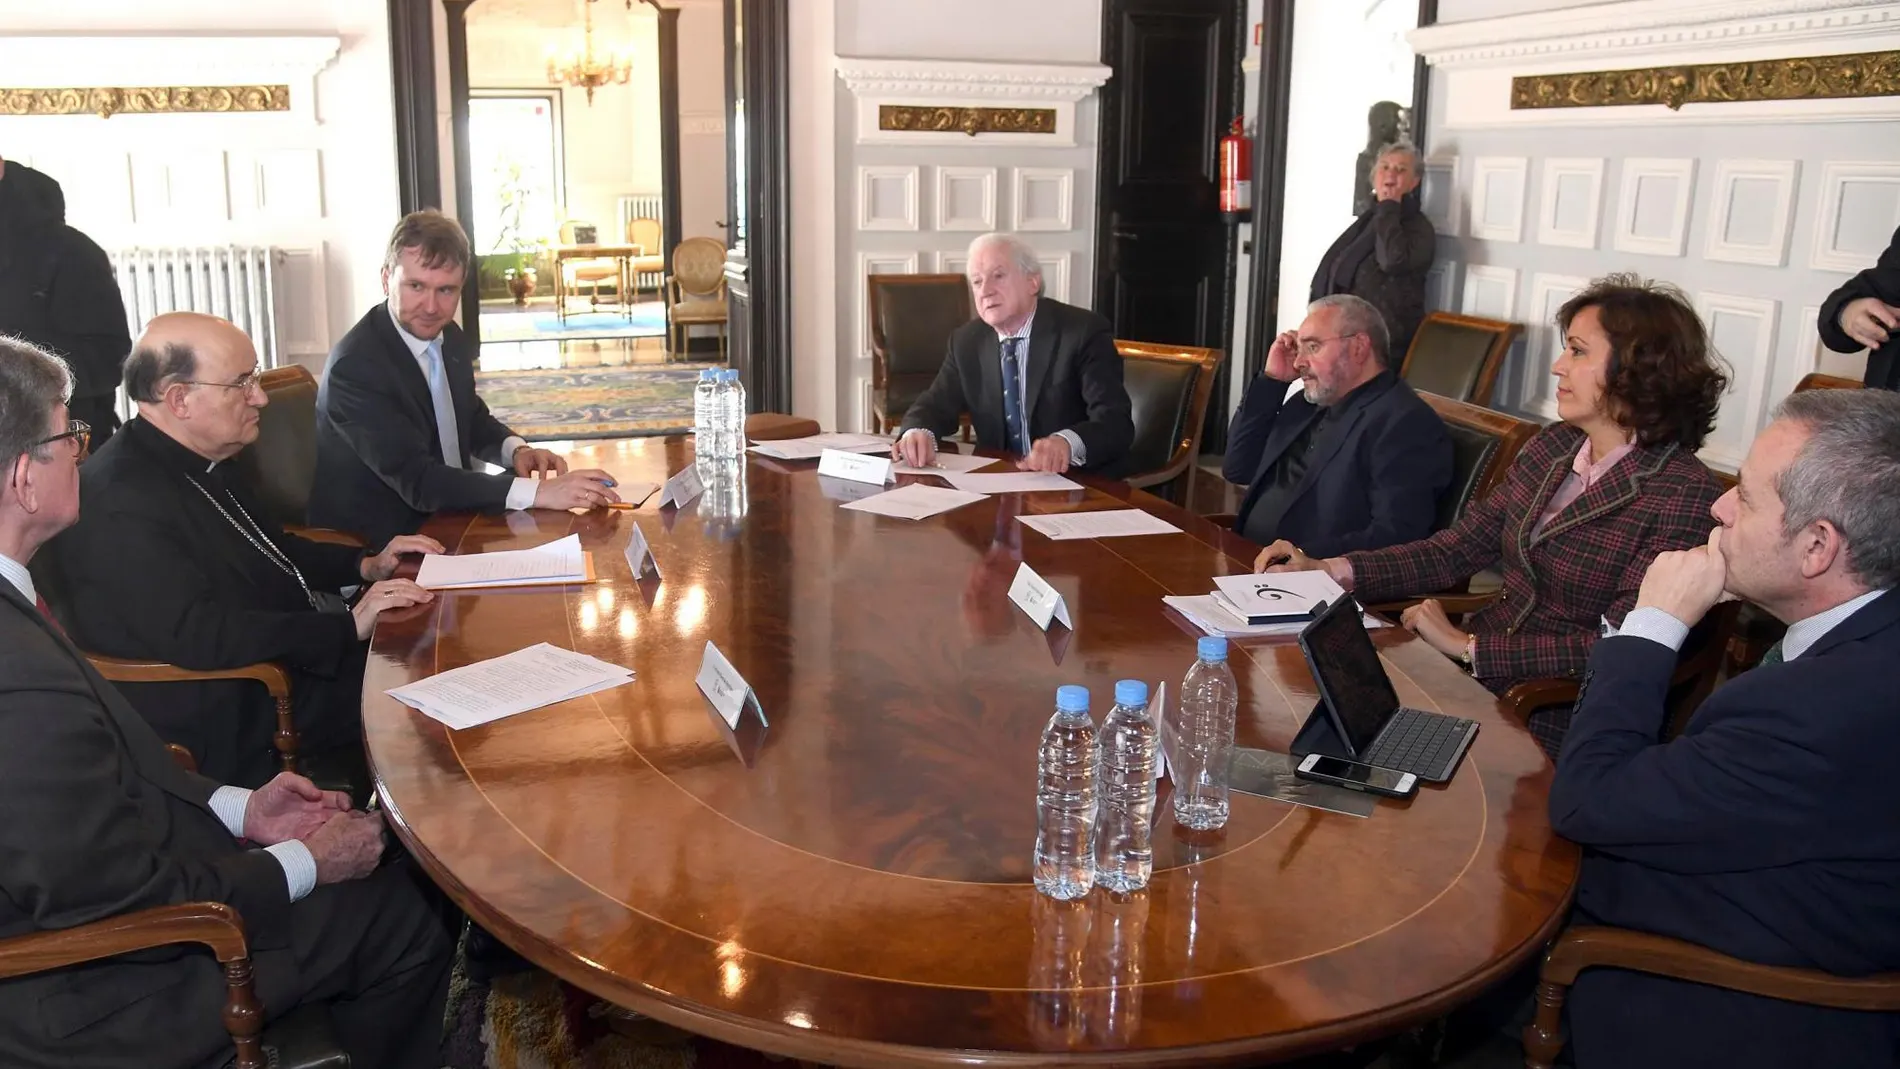 El alcalde de Burgos, Javier Lacalle, se reúne con el presidente de Patrimonio Nacional, Alfredo Pérez de Armiñán, acompañado por Fidel Herráez y Antonio Méndez Pozo, entre otros